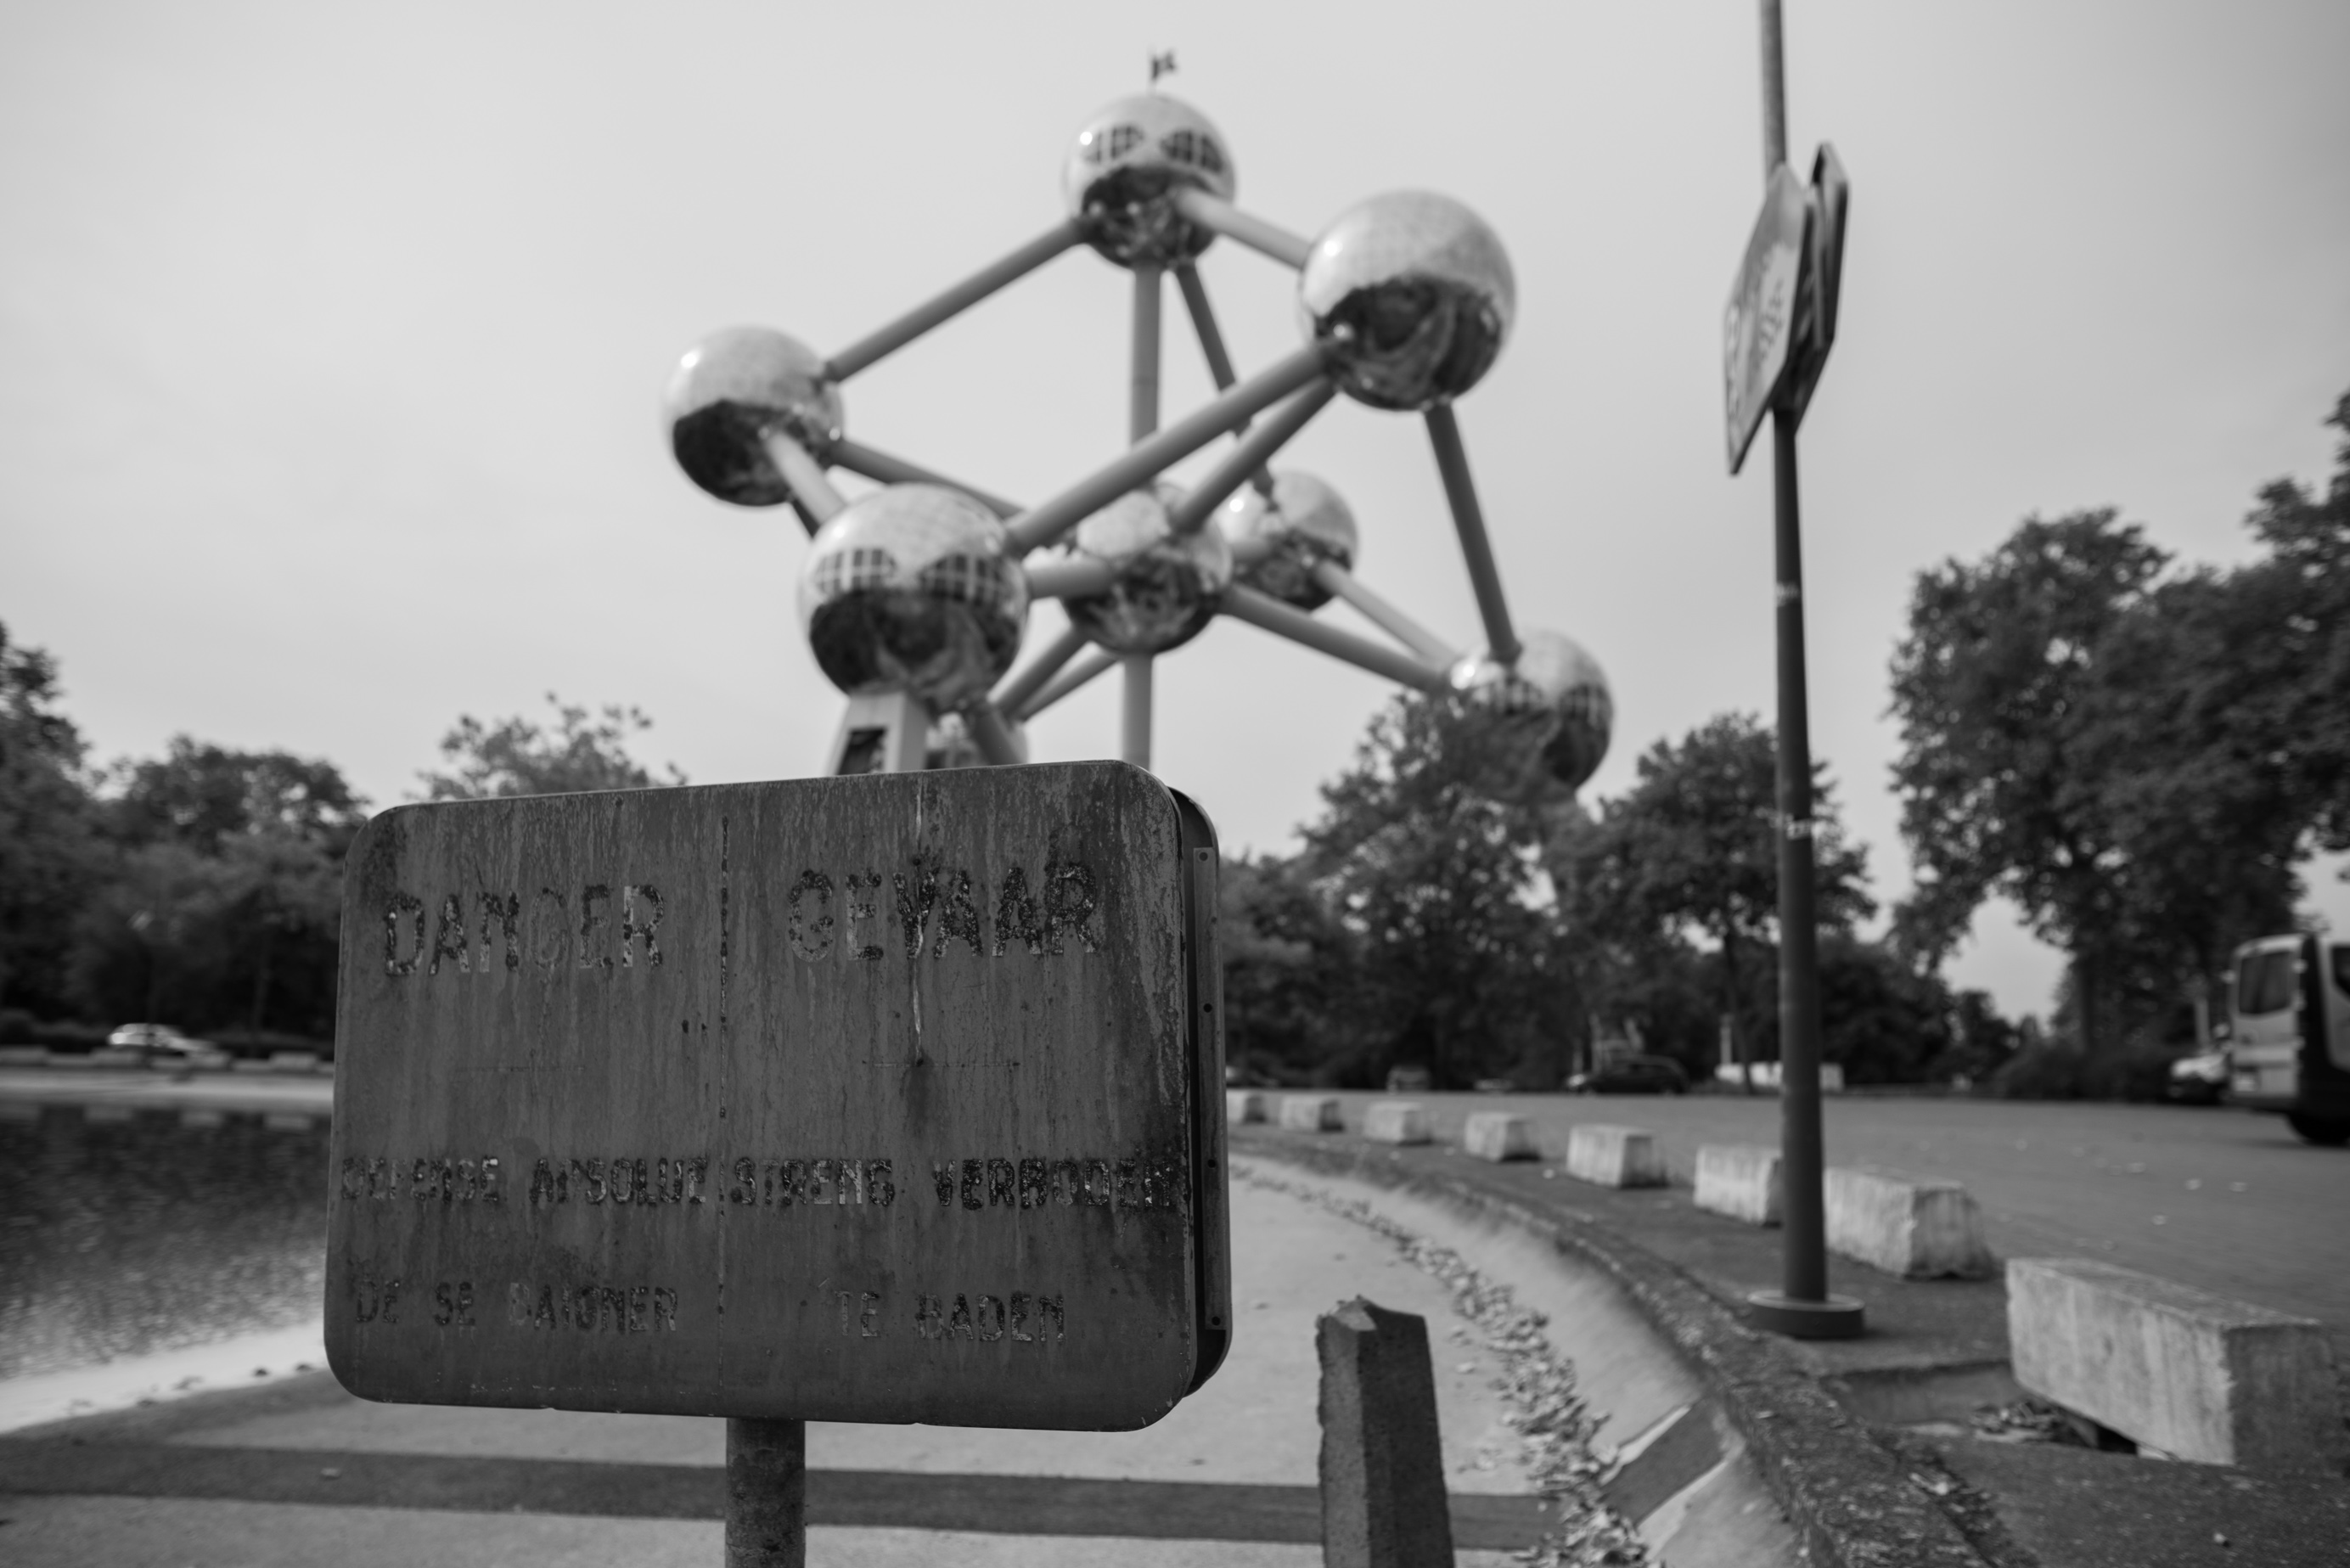  Place de l'Atomium